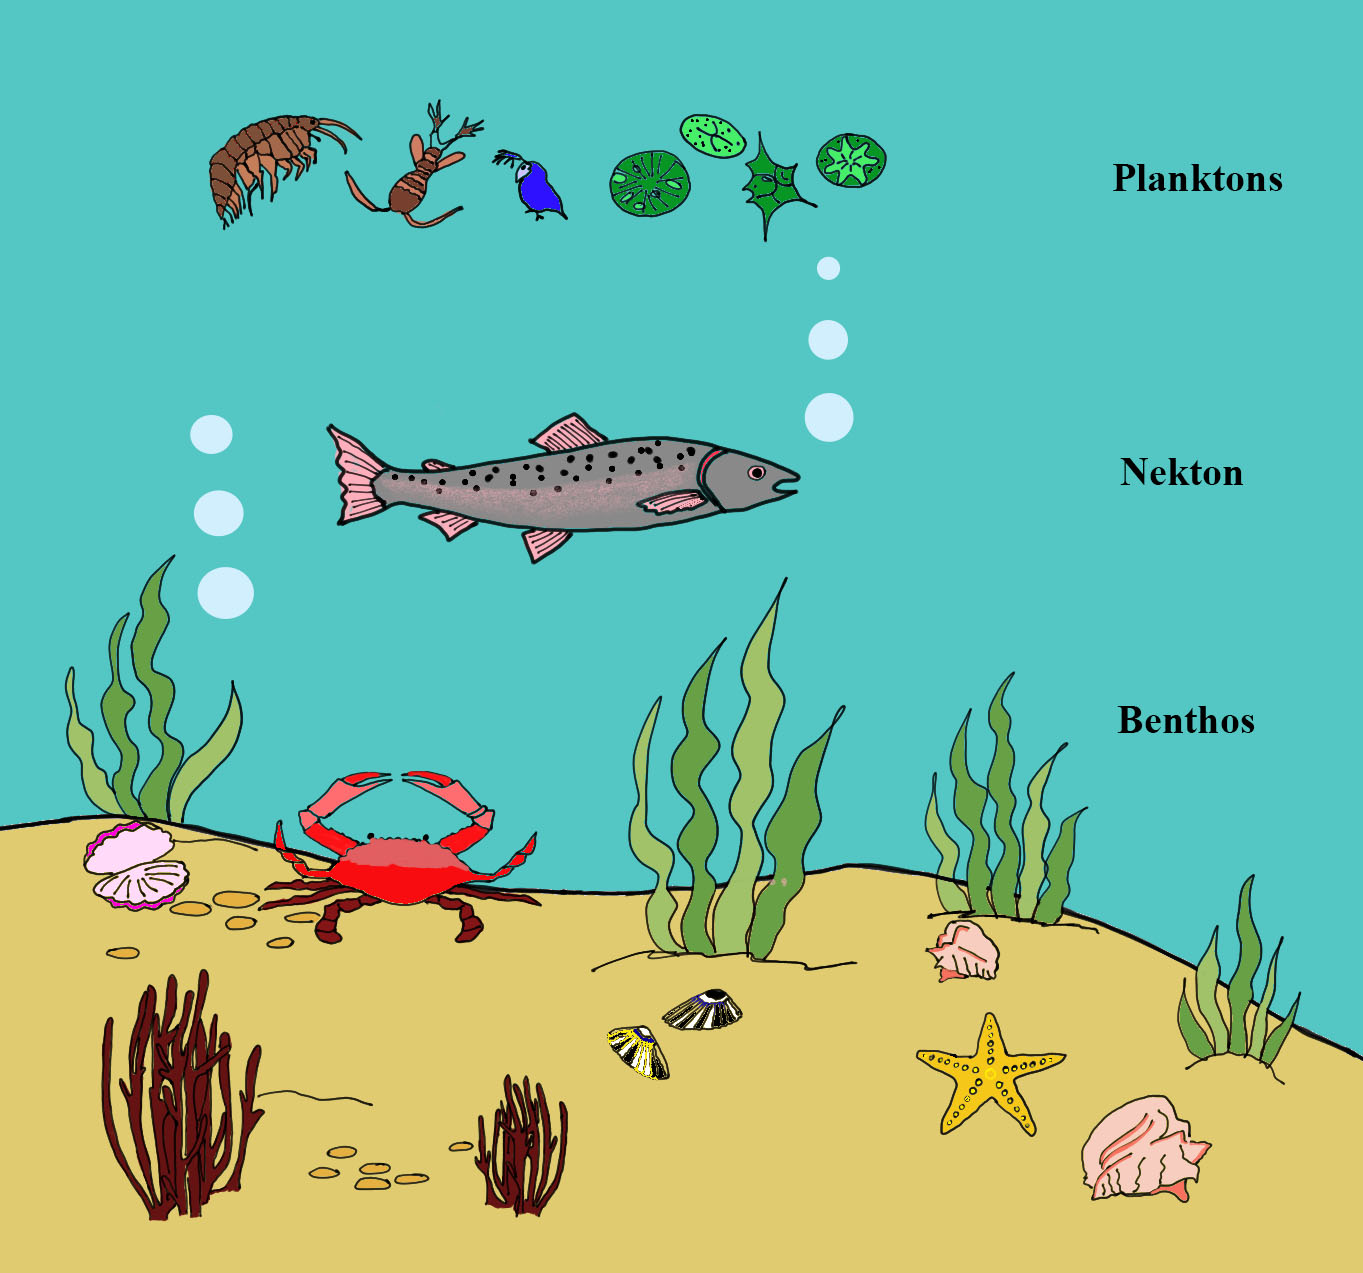 Main groups of aquatic organisms